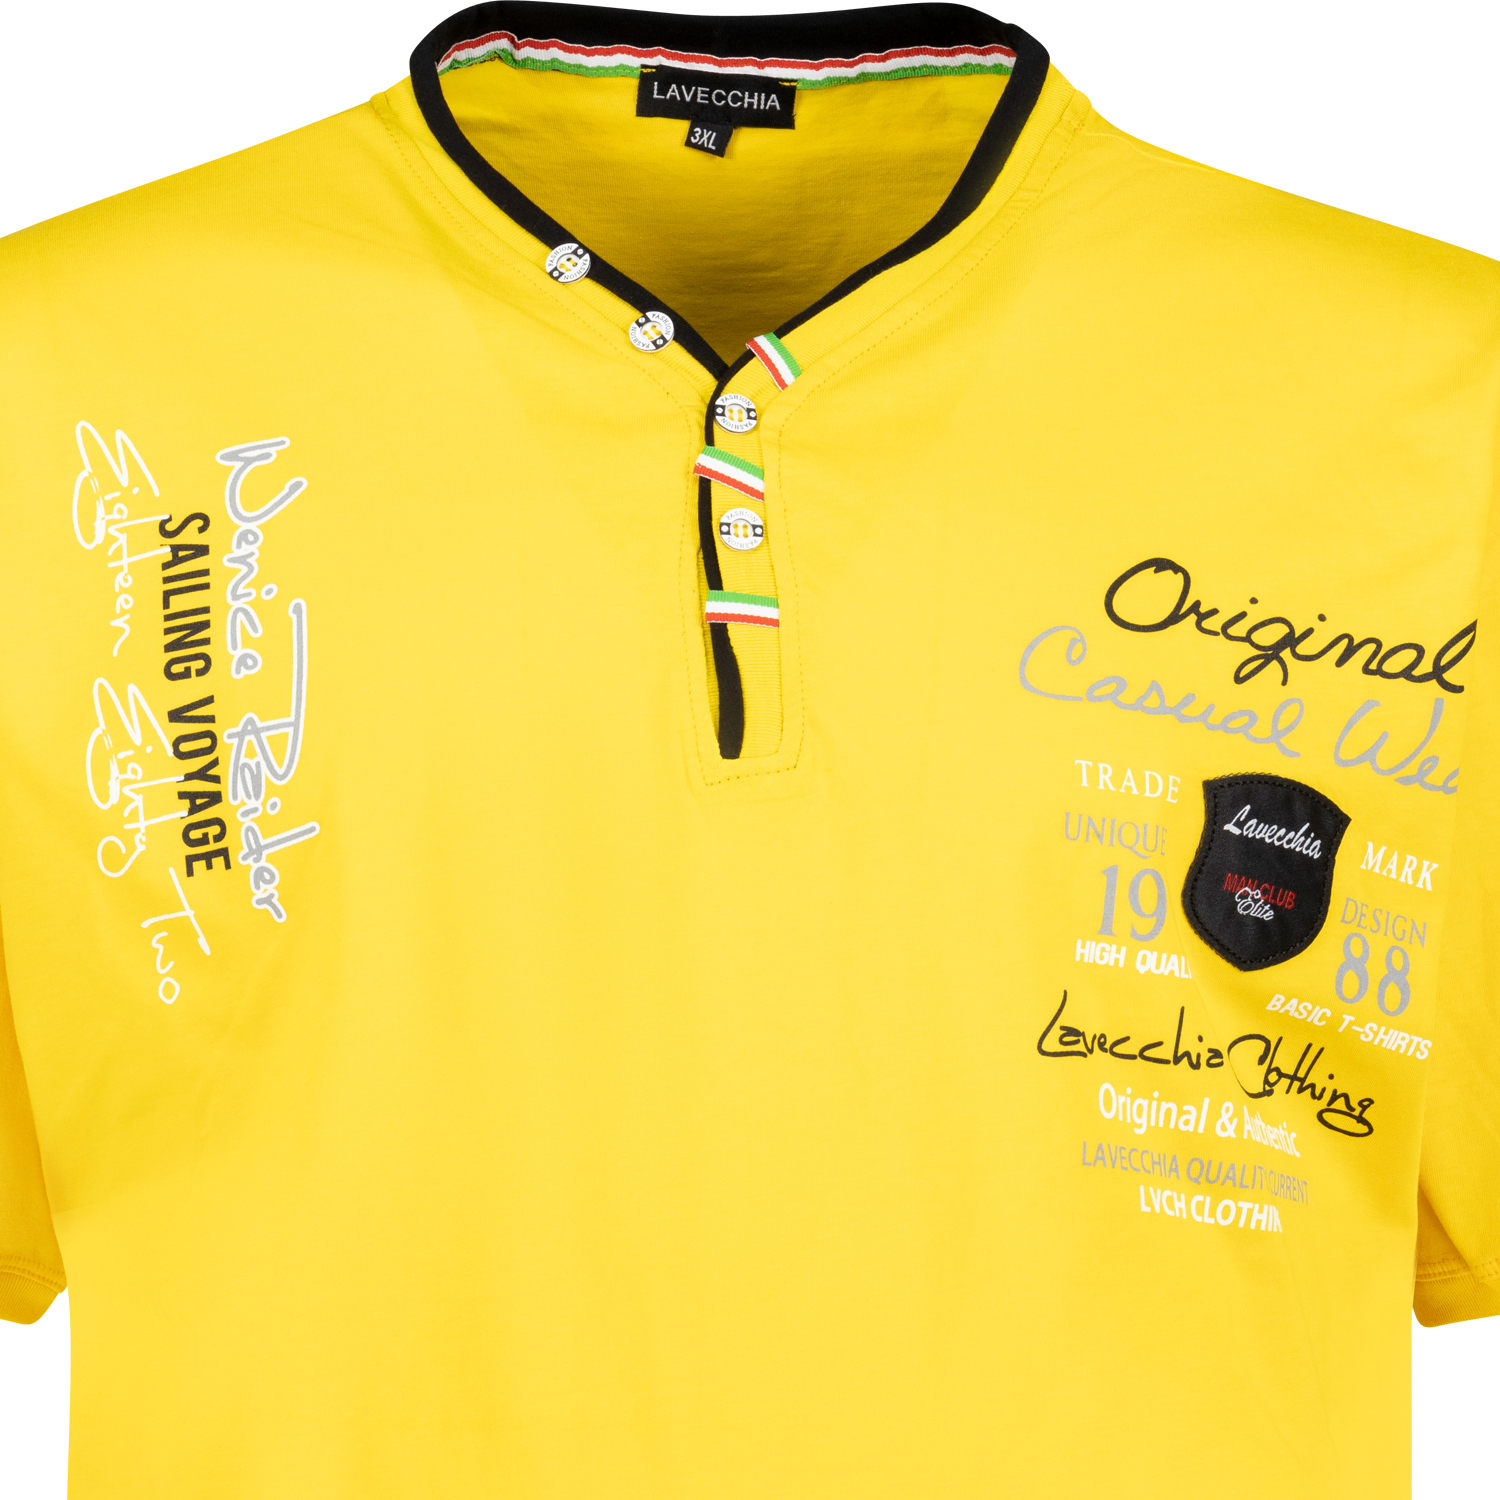 Kurzarm Shirt von Lavecchia in Übergrößen 3XL - 8XL gelb mit Brustaufdruck